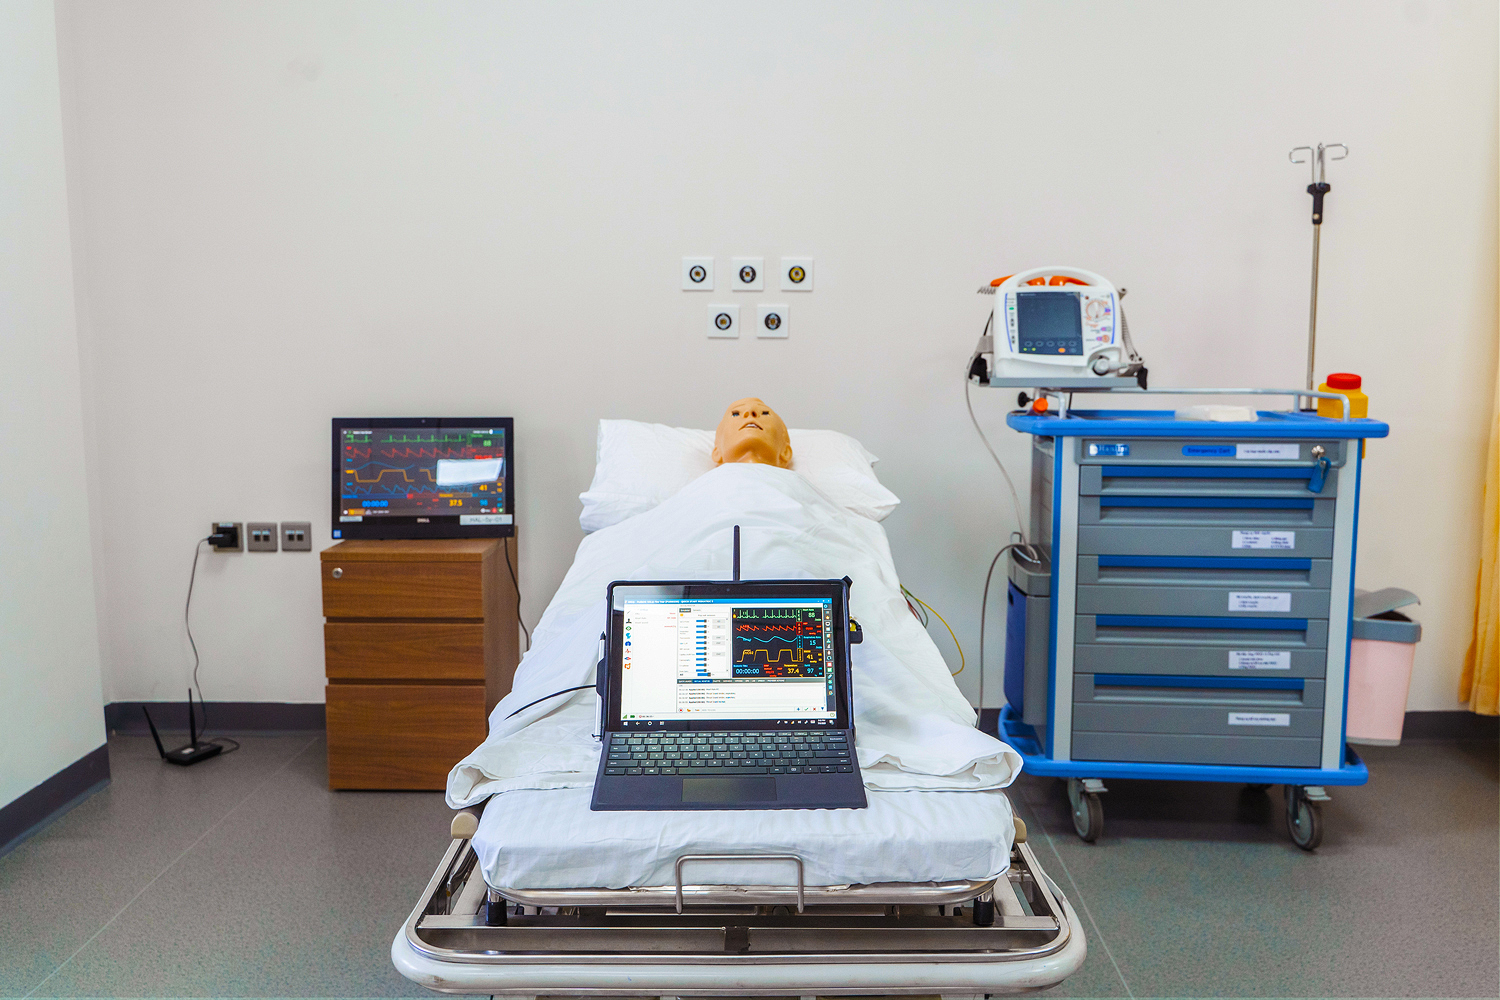 Die Standard-Betriebsprozedur zur Steuerung einer interaktiven medizinischen Simulationspuppe erfolgt über einen Laptop oder ein Tablet.